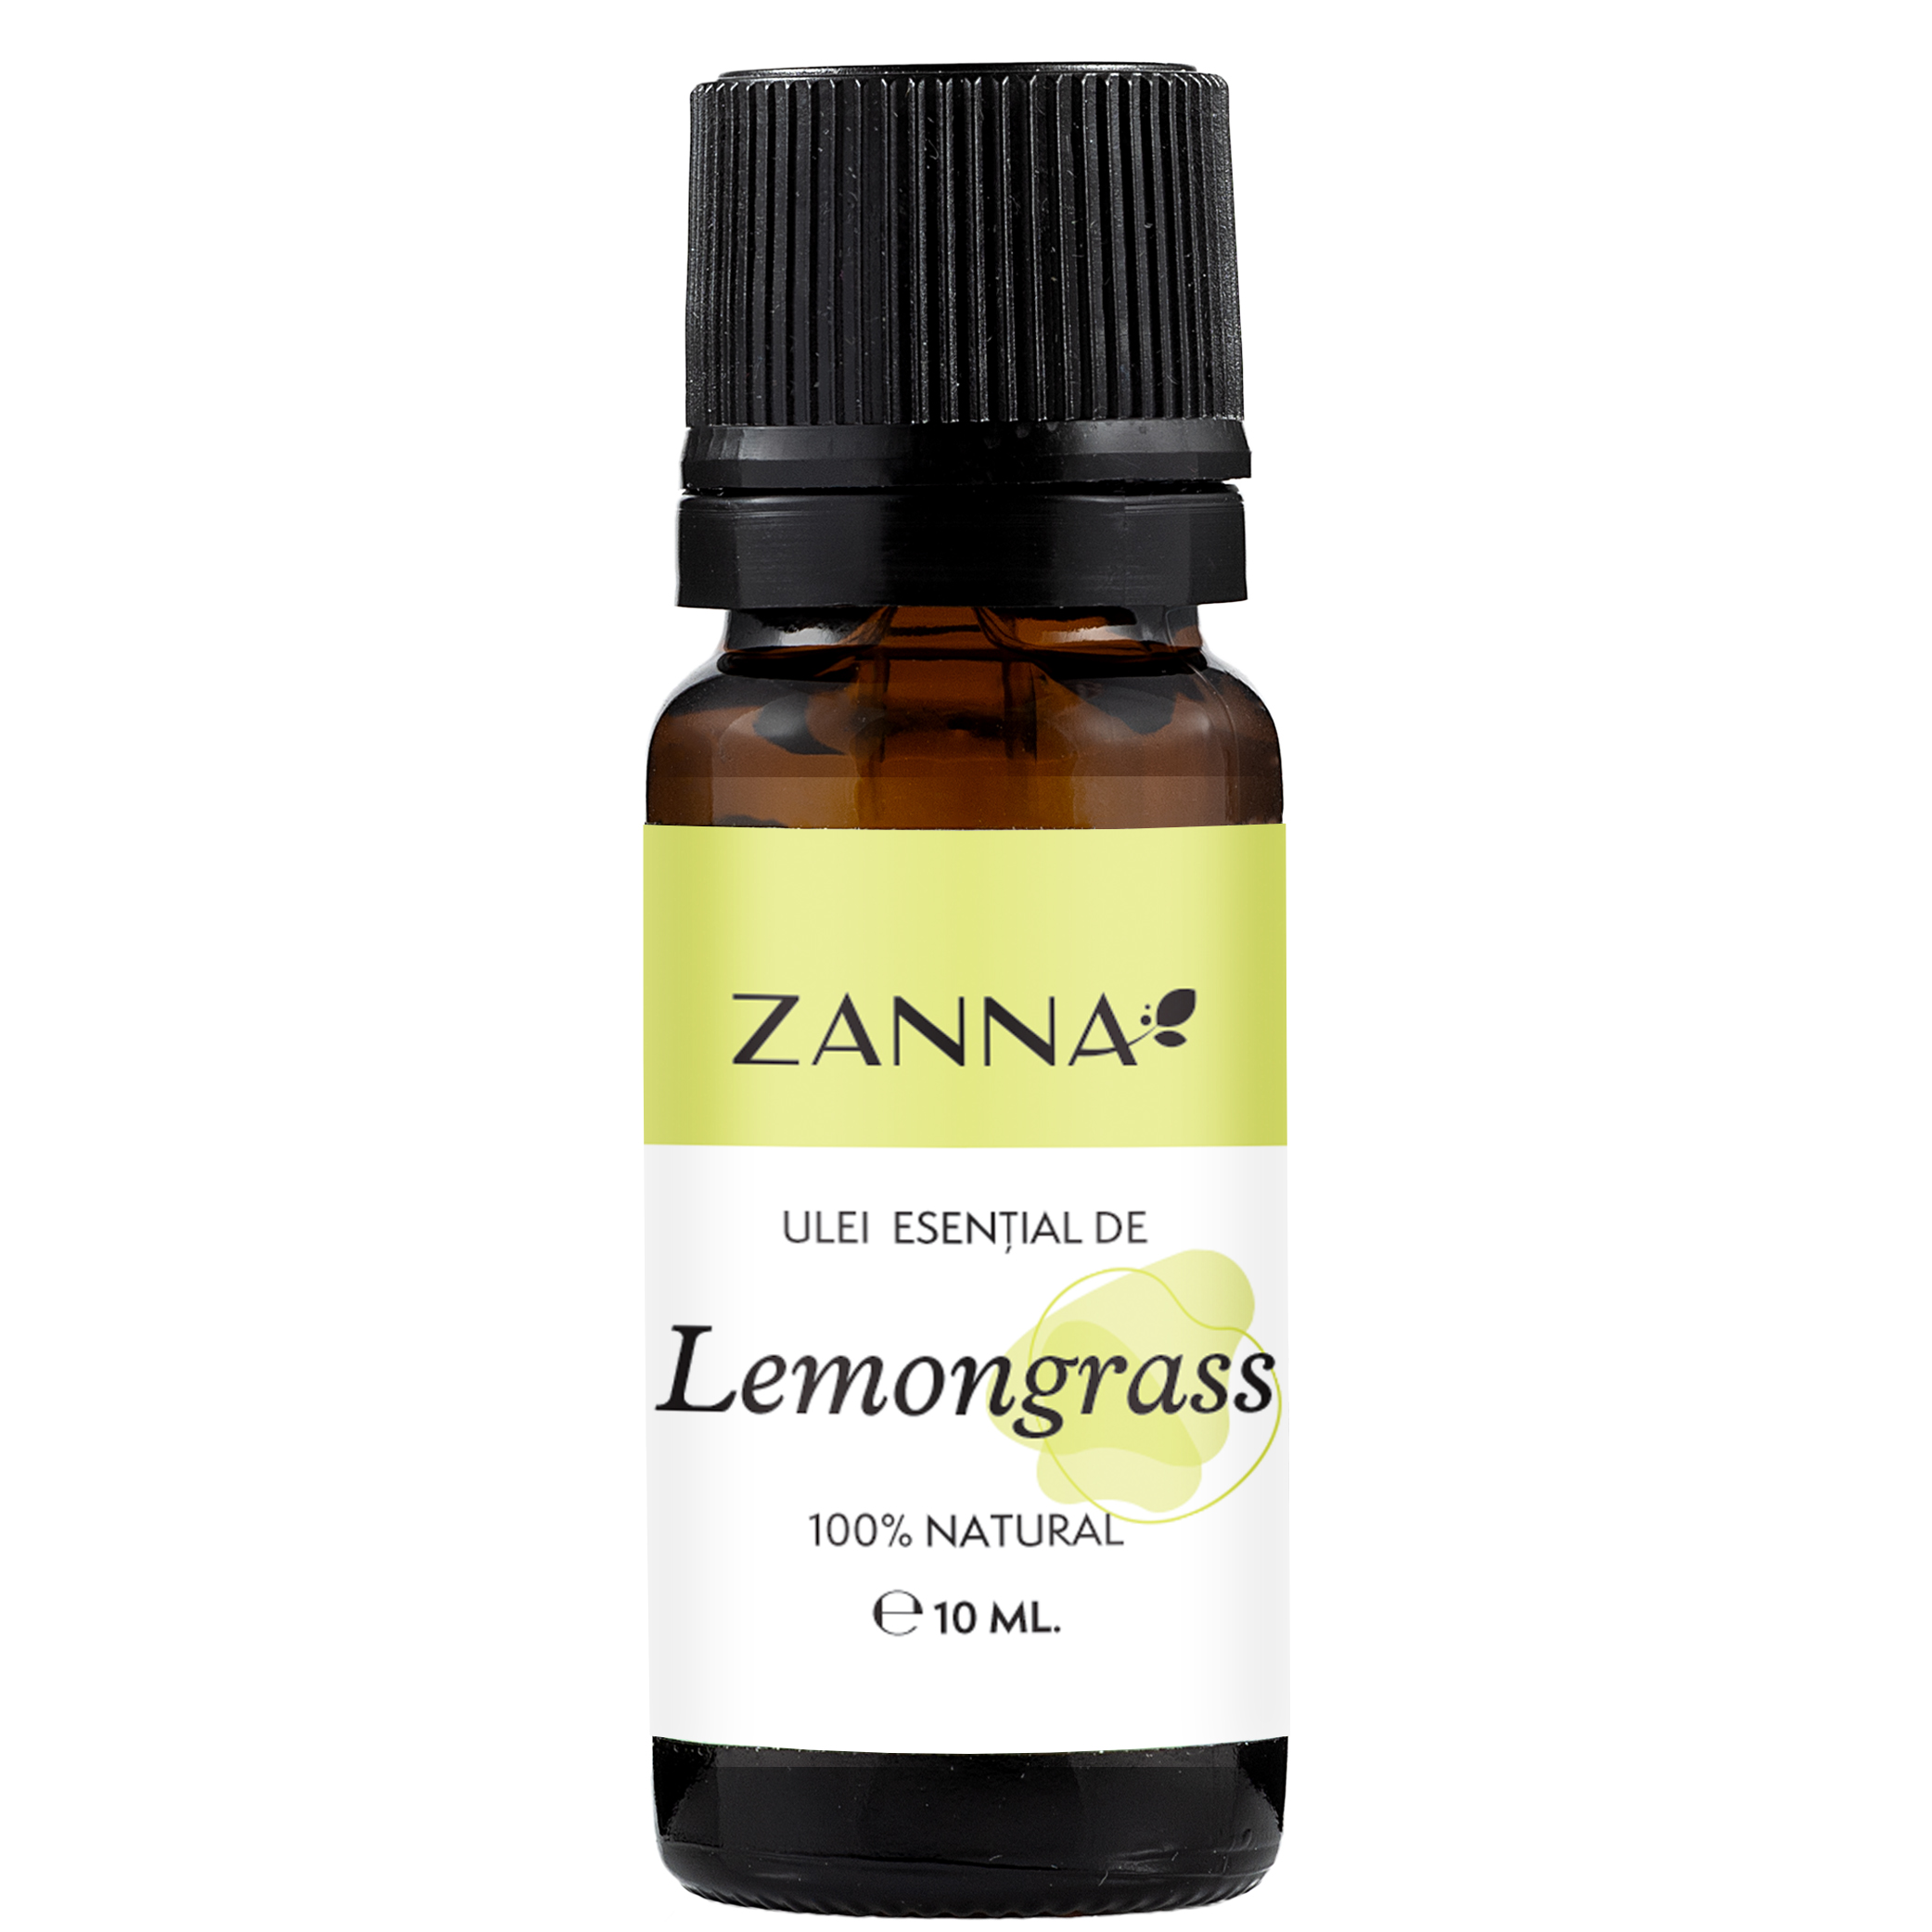 Ulei esential de Lemongrass 10ml, Zanna